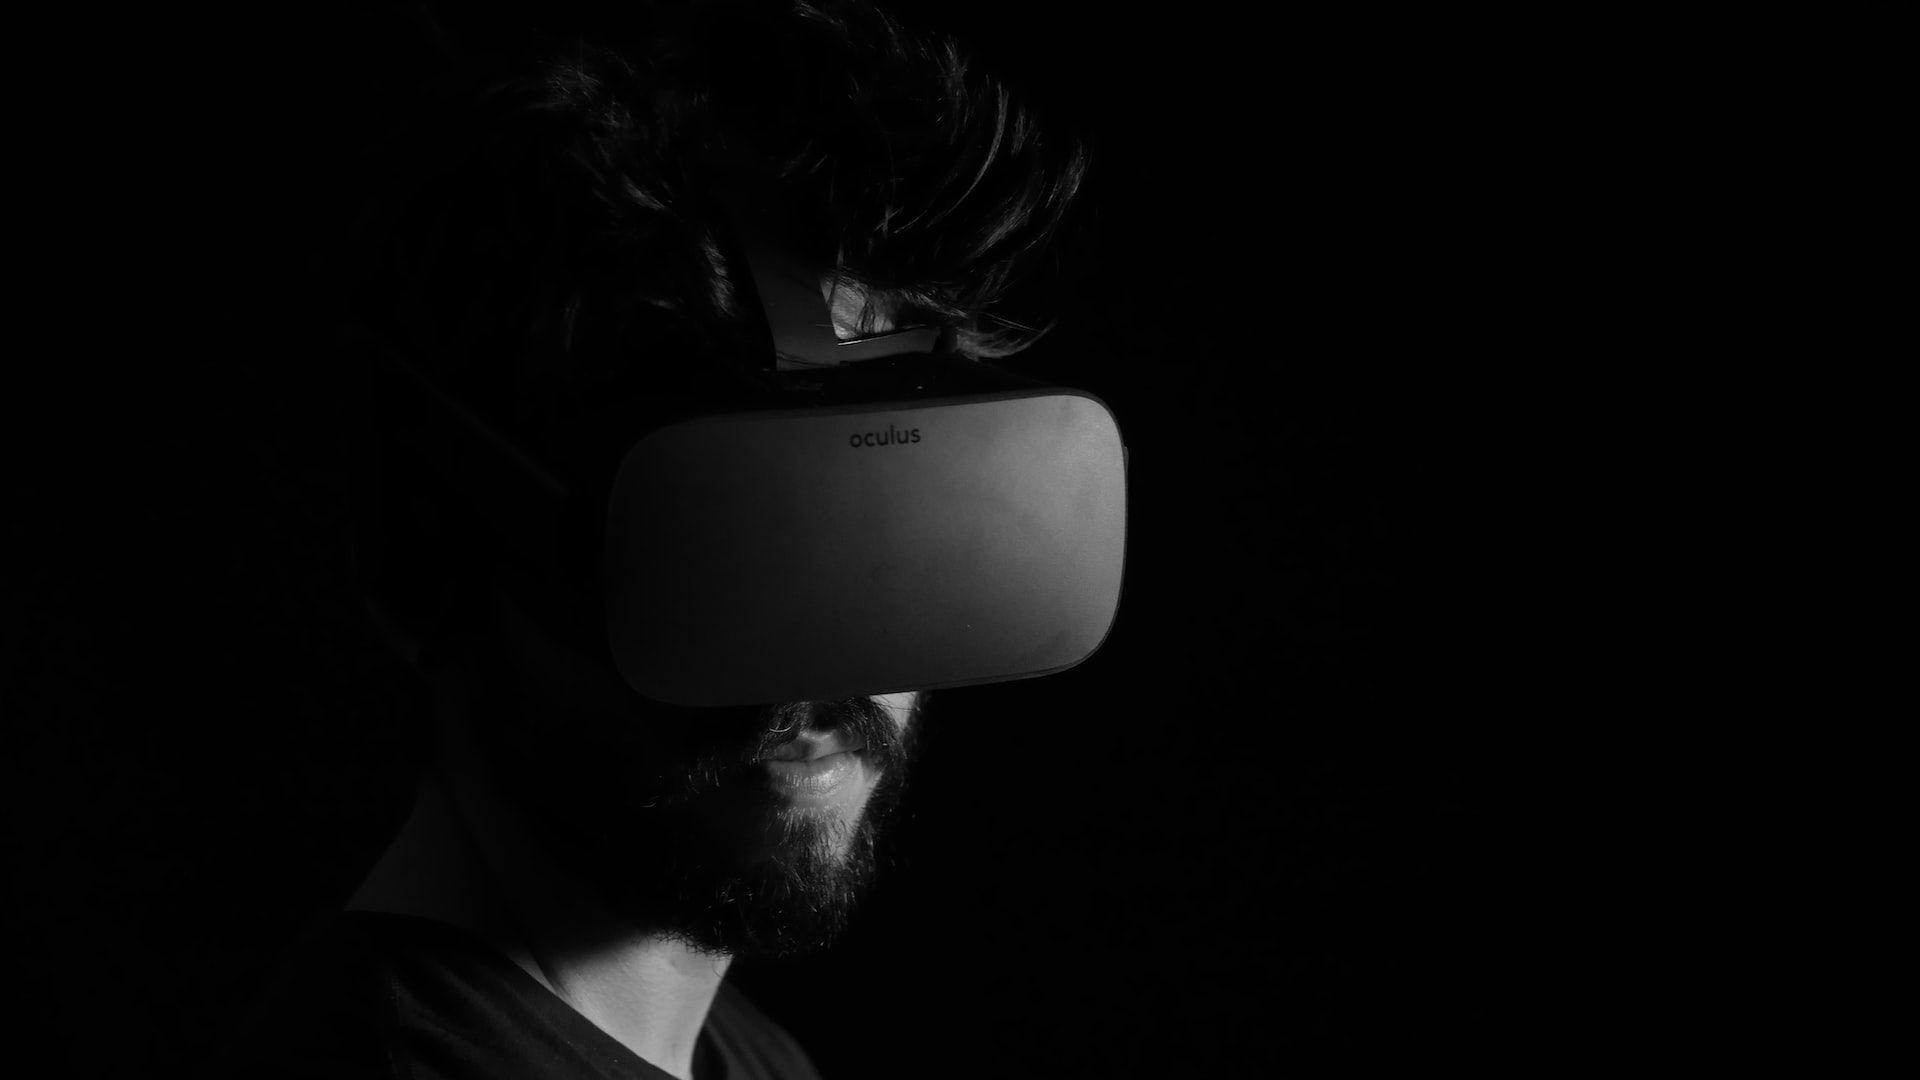 Wirtualna rzeczywistość, VR